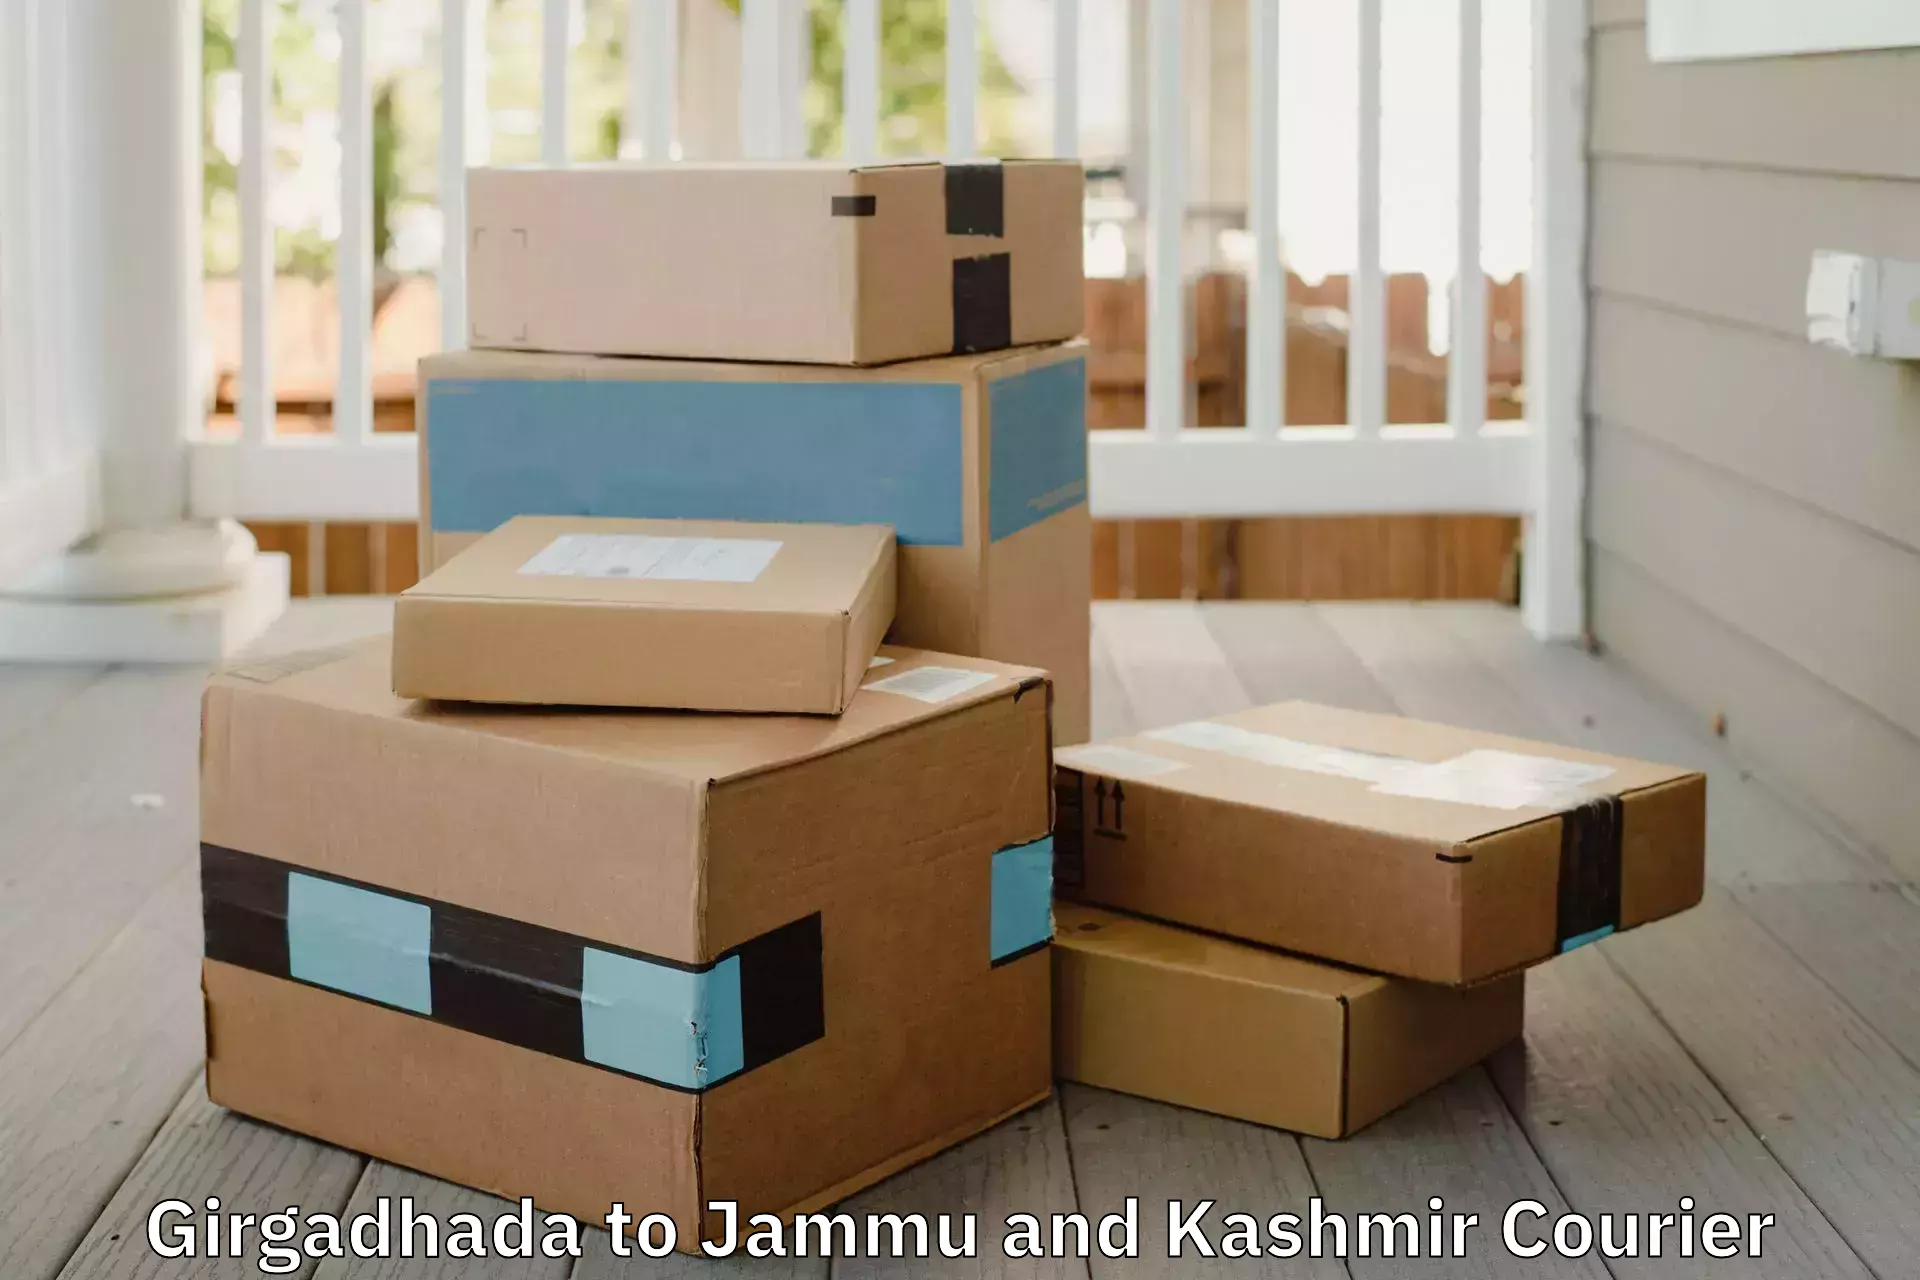 Local furniture movers Girgadhada to Ramnagar Udhampur